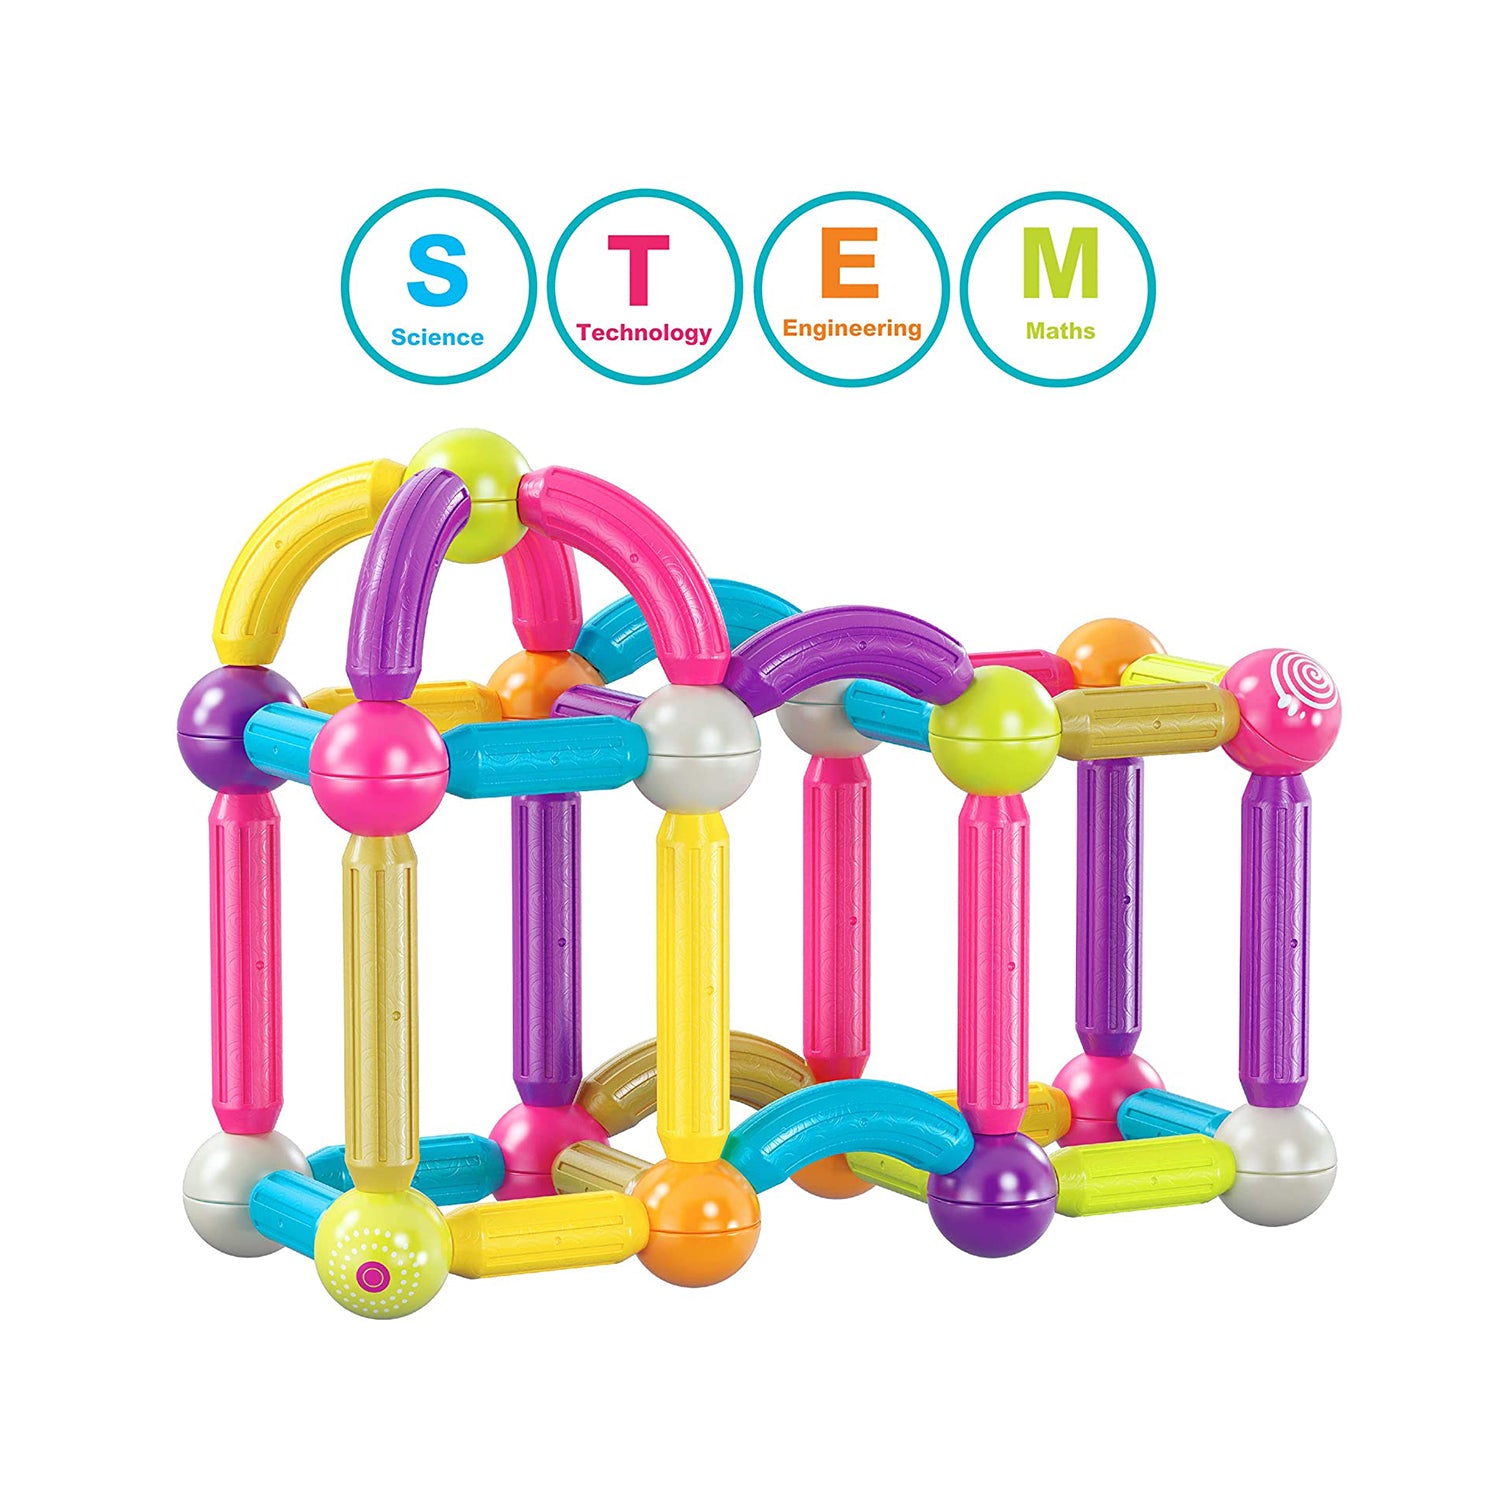 Contixo ST4 Kids Magnet Toys Magnetic Tiles 112 PCs 3D Building Blocks